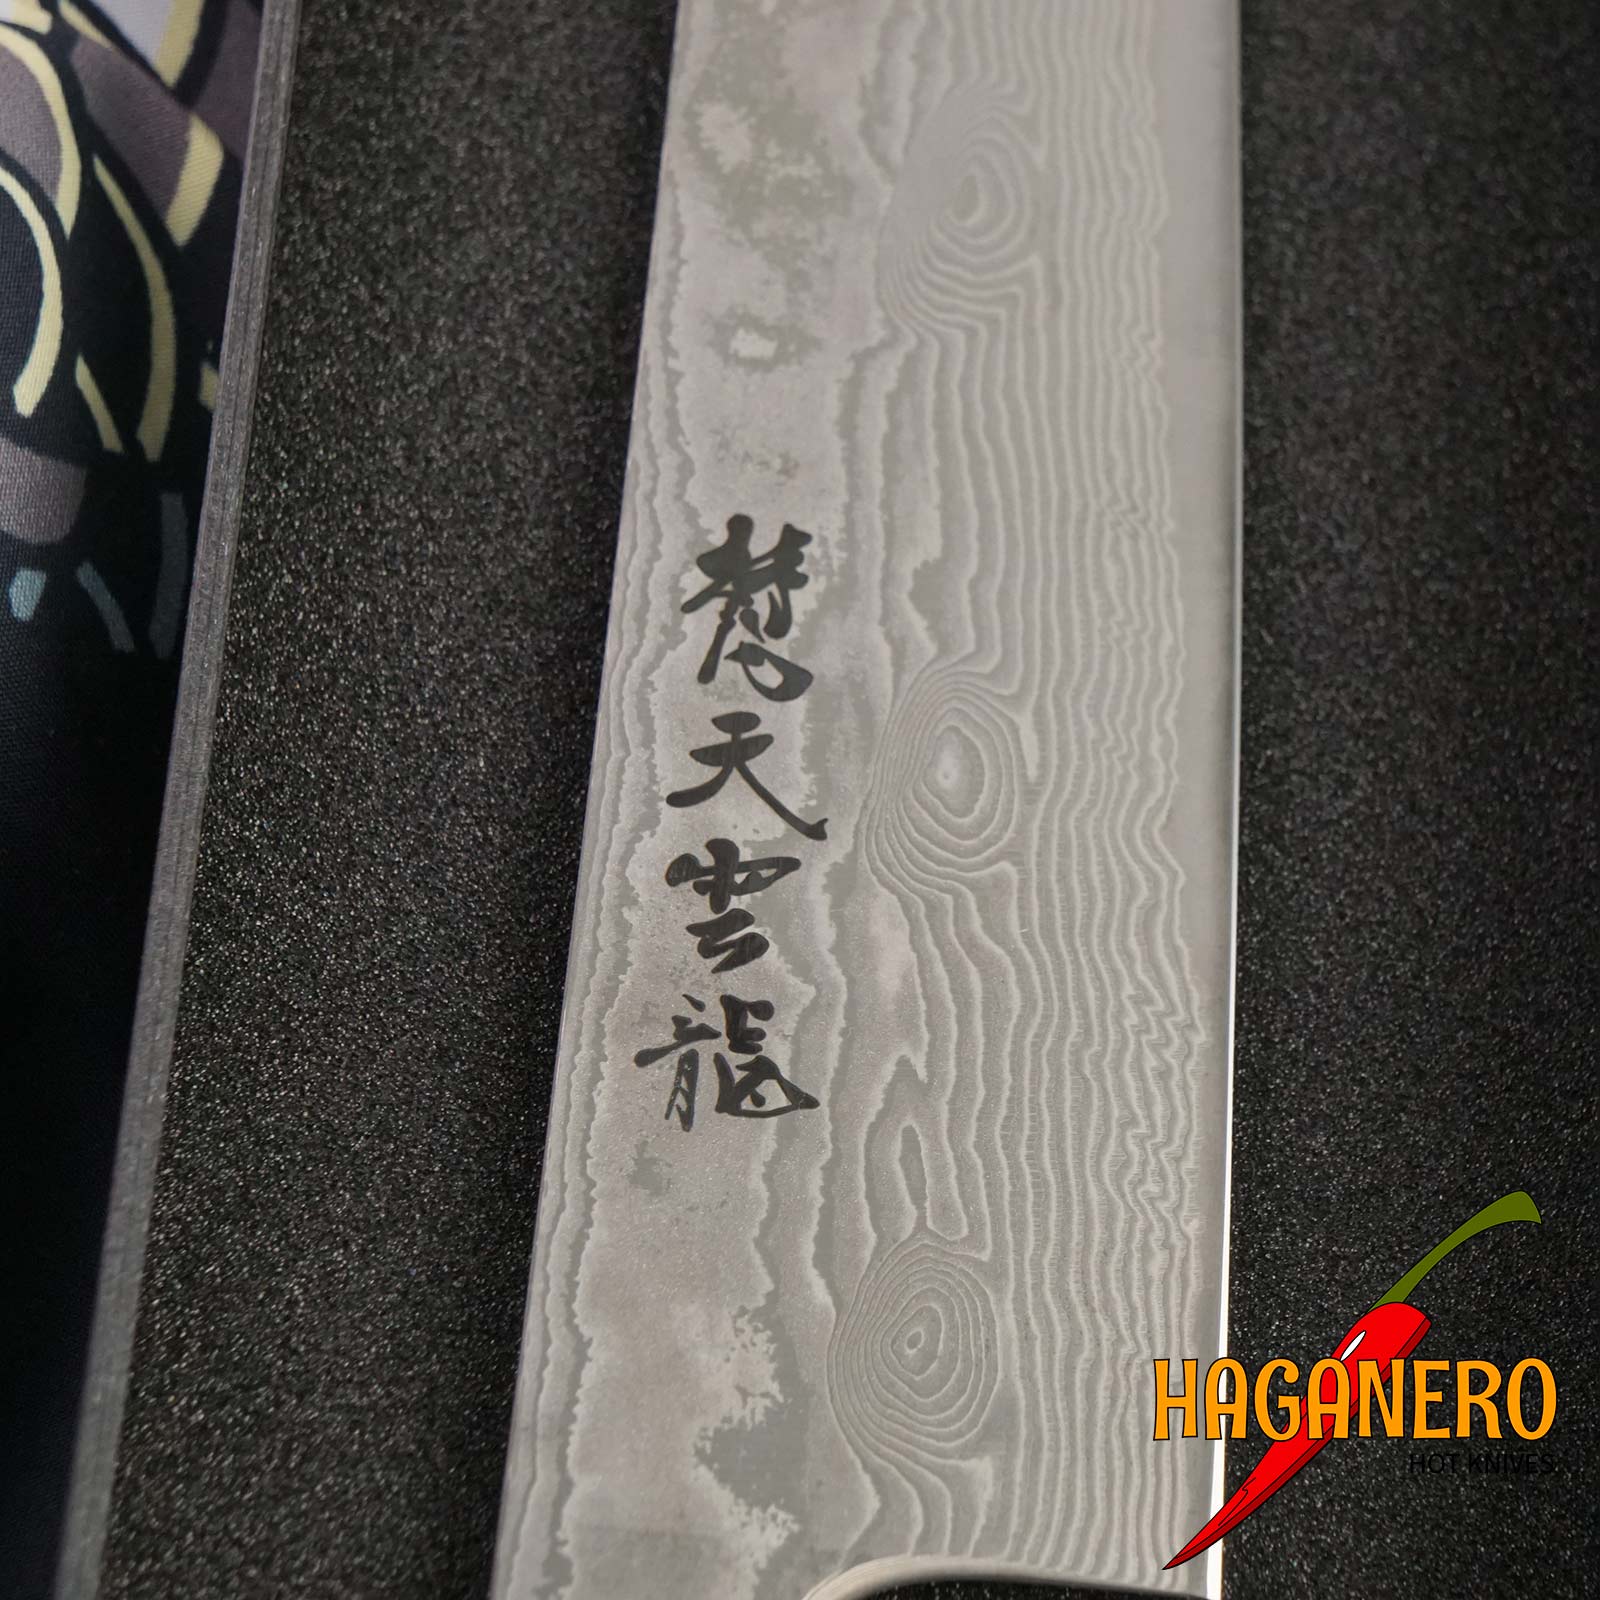 Sujihiki Japanese kitchen knife Ryusen Hamono Bonten Unryu BU-309 27cm